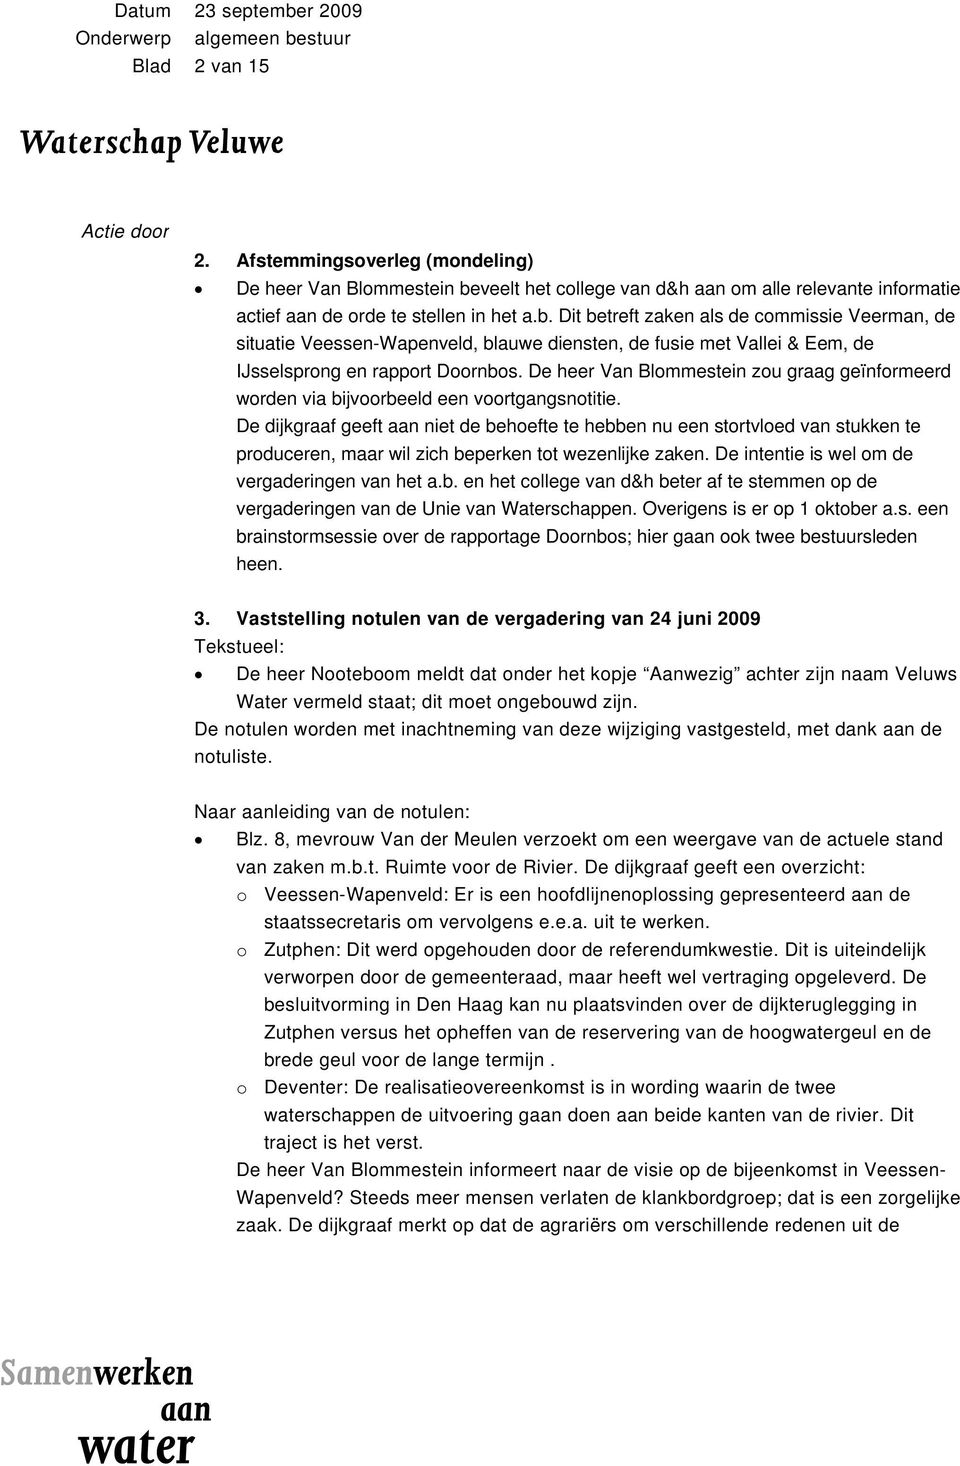 Dit betreft zaken als de commissie Veerman, de situatie Veessen-Wapenveld, blauwe diensten, de fusie met Vallei & Eem, de IJsselsprong en rapport Doornbos.